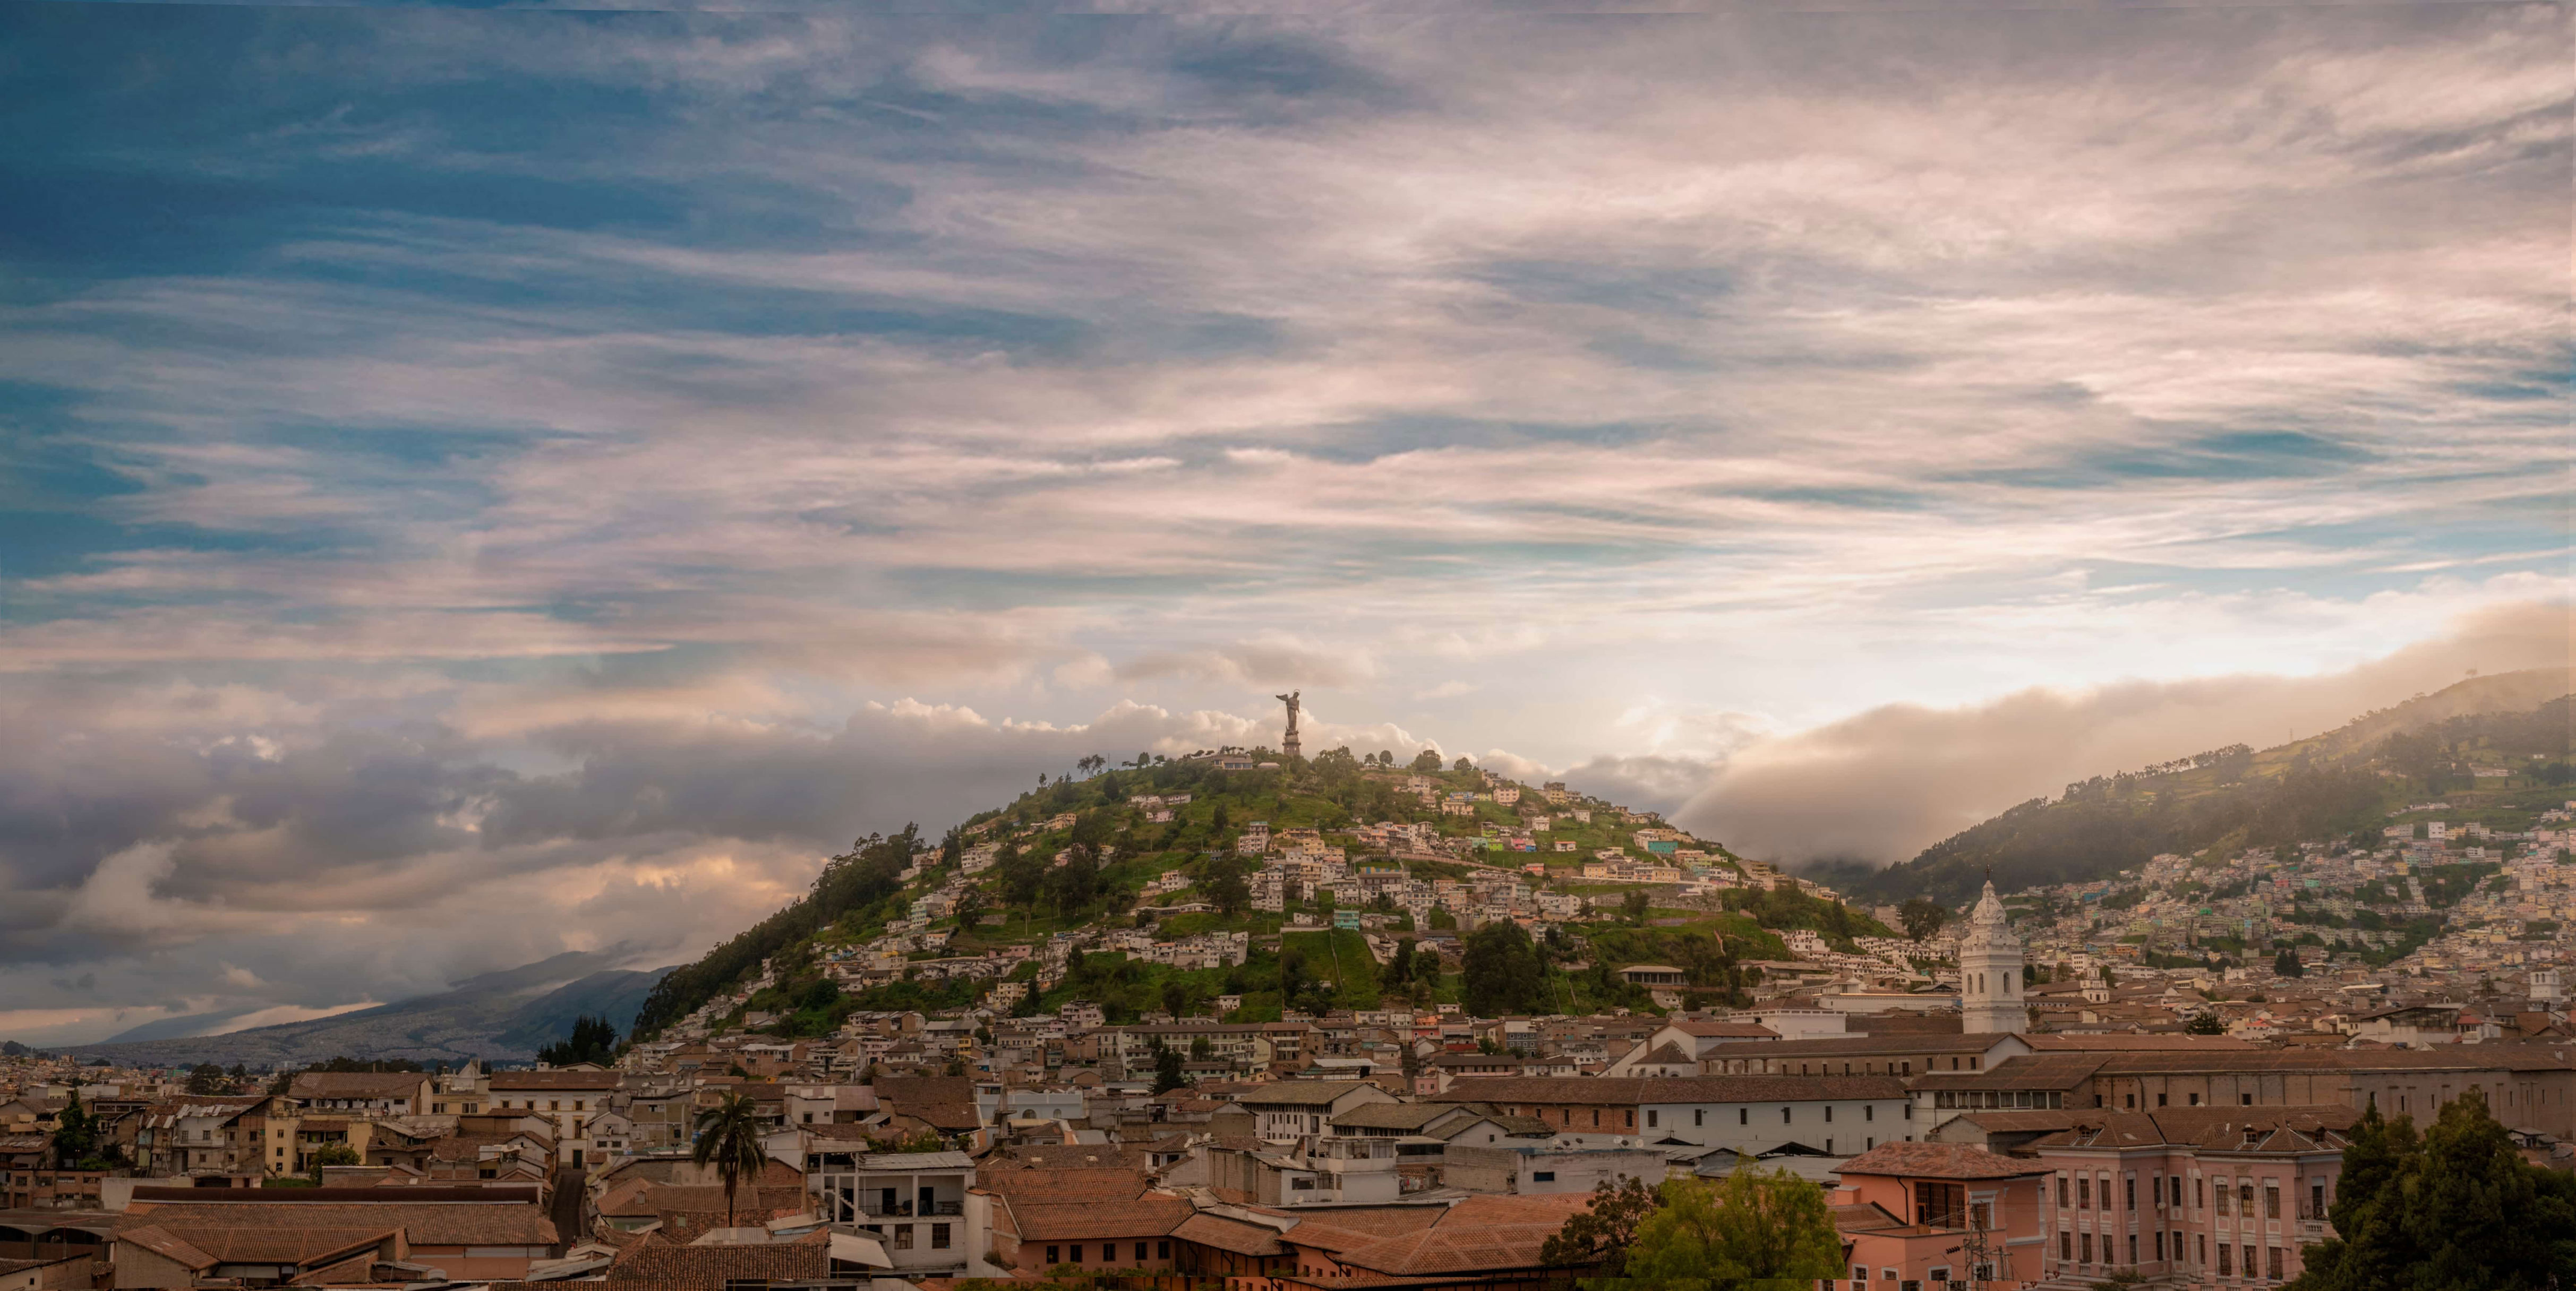 La capitale de l’Équateur, qui figurera dans la liste des meilleurs endroits à visiter en 2024 selon <em>Condé Nast Traveller</em>, est située sur les contreforts des Andes, au sommet des ruines d’une cité inca. Quito a été la première ville à recevoir le titre de <a href="https://whc.unesco.org/fr/list/2/" rel="noreferrer noopener">site du patrimoine mondial de l’UNESCO</a>. La ville possède un centre historique bien préservé, avec des attractions incontournables comme la Basílica del Voto Nacional, la Plaza de la Independencia et la célèbre Plaza de San Francisco. La scène culinaire de Quito est en pleine effervescence, grâce notamment à des restaurants très prisés tels que <a href="https://www.instagram.com/nuema_restaurante/" rel="noreferrer noopener">Nuema</a>, dirigé par Pía Salazar, qui a été couronnée meilleure pâtissière du monde en 2023.